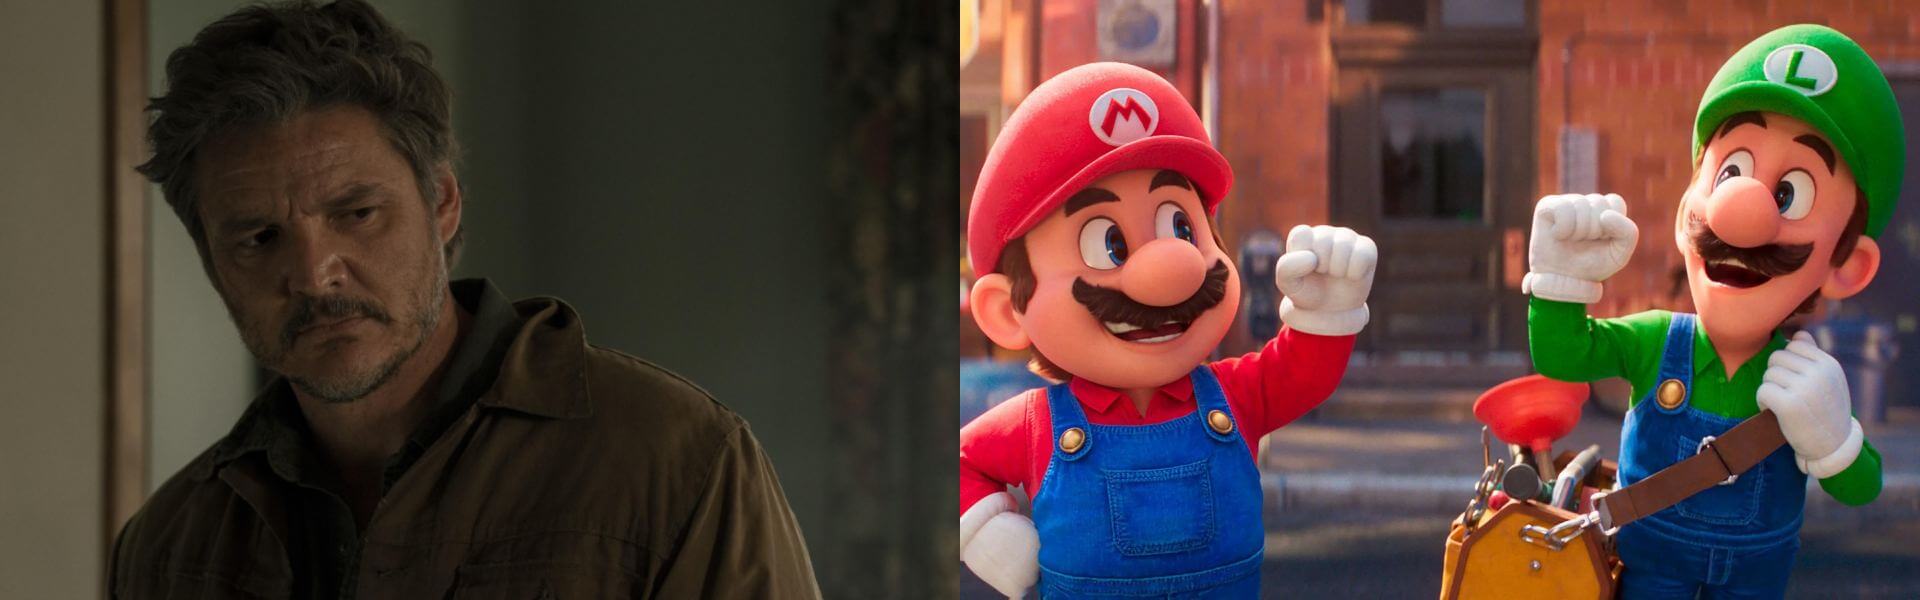 Super Mario e as melhores adaptações de videogames para os cinemas e séries de TV